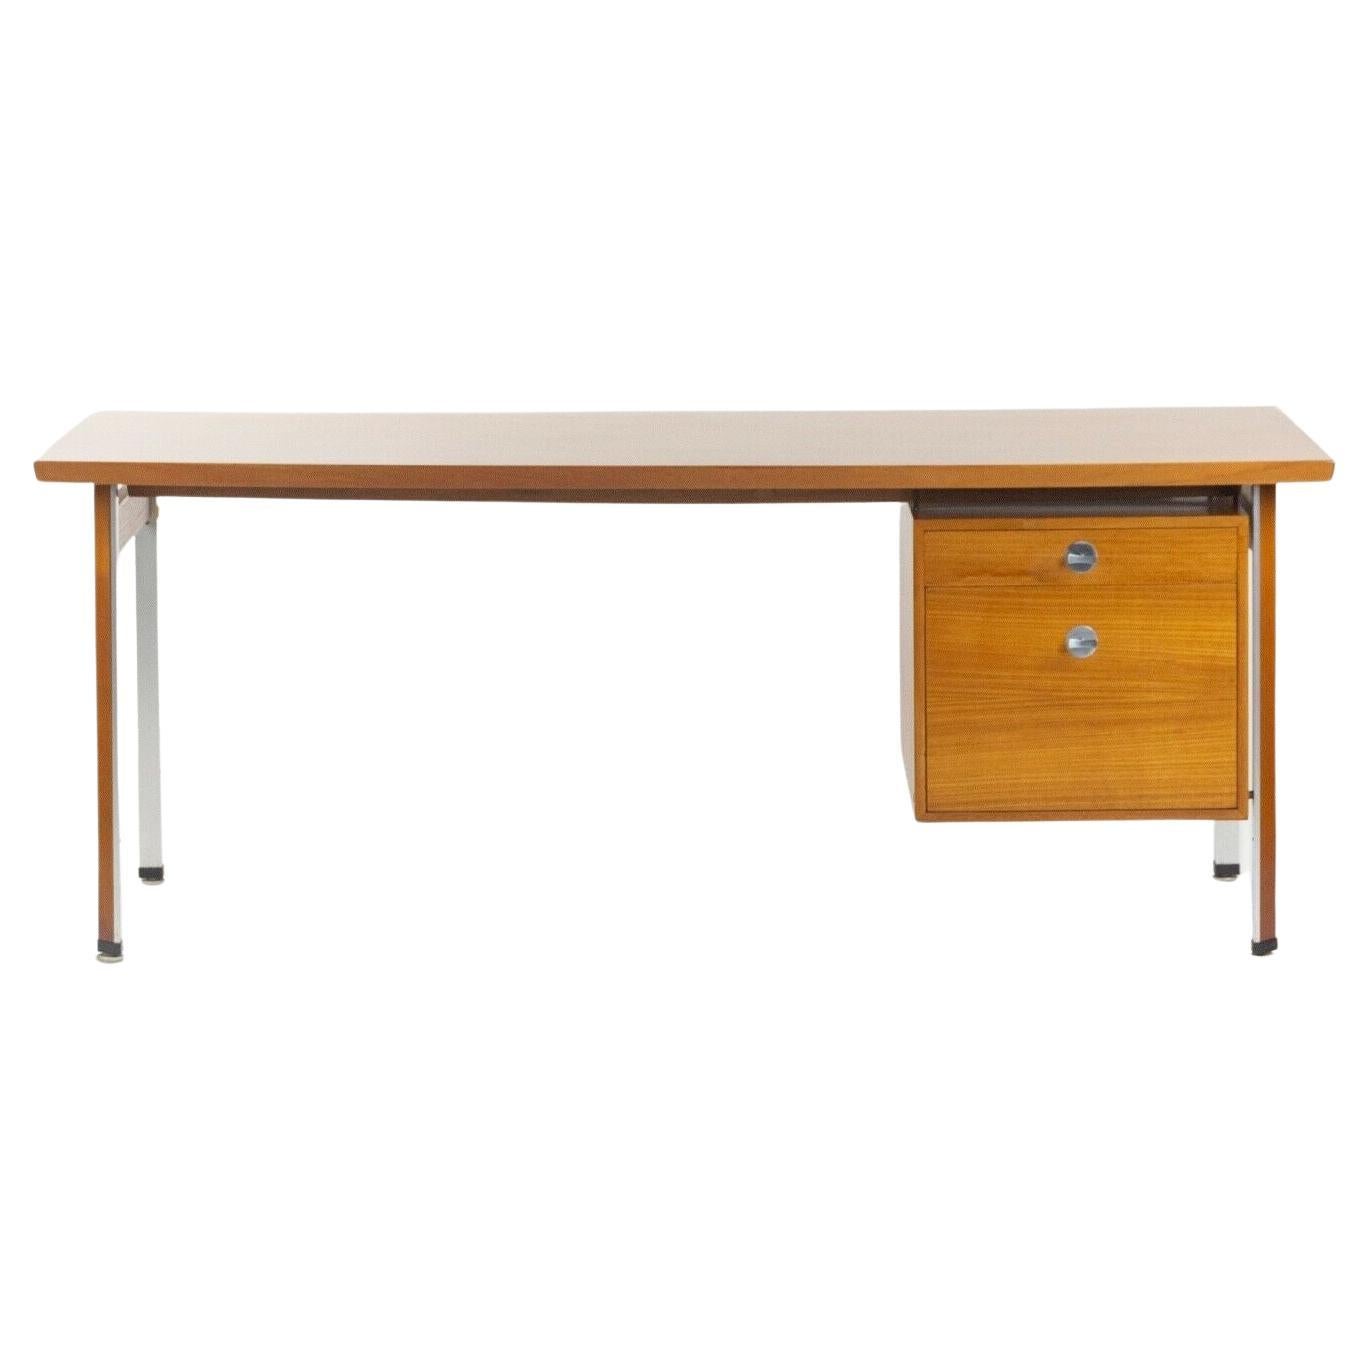 1960s Finn Juhl France & Son Technocrat Desk Model 963 in Teak Made in Denmark For Sale